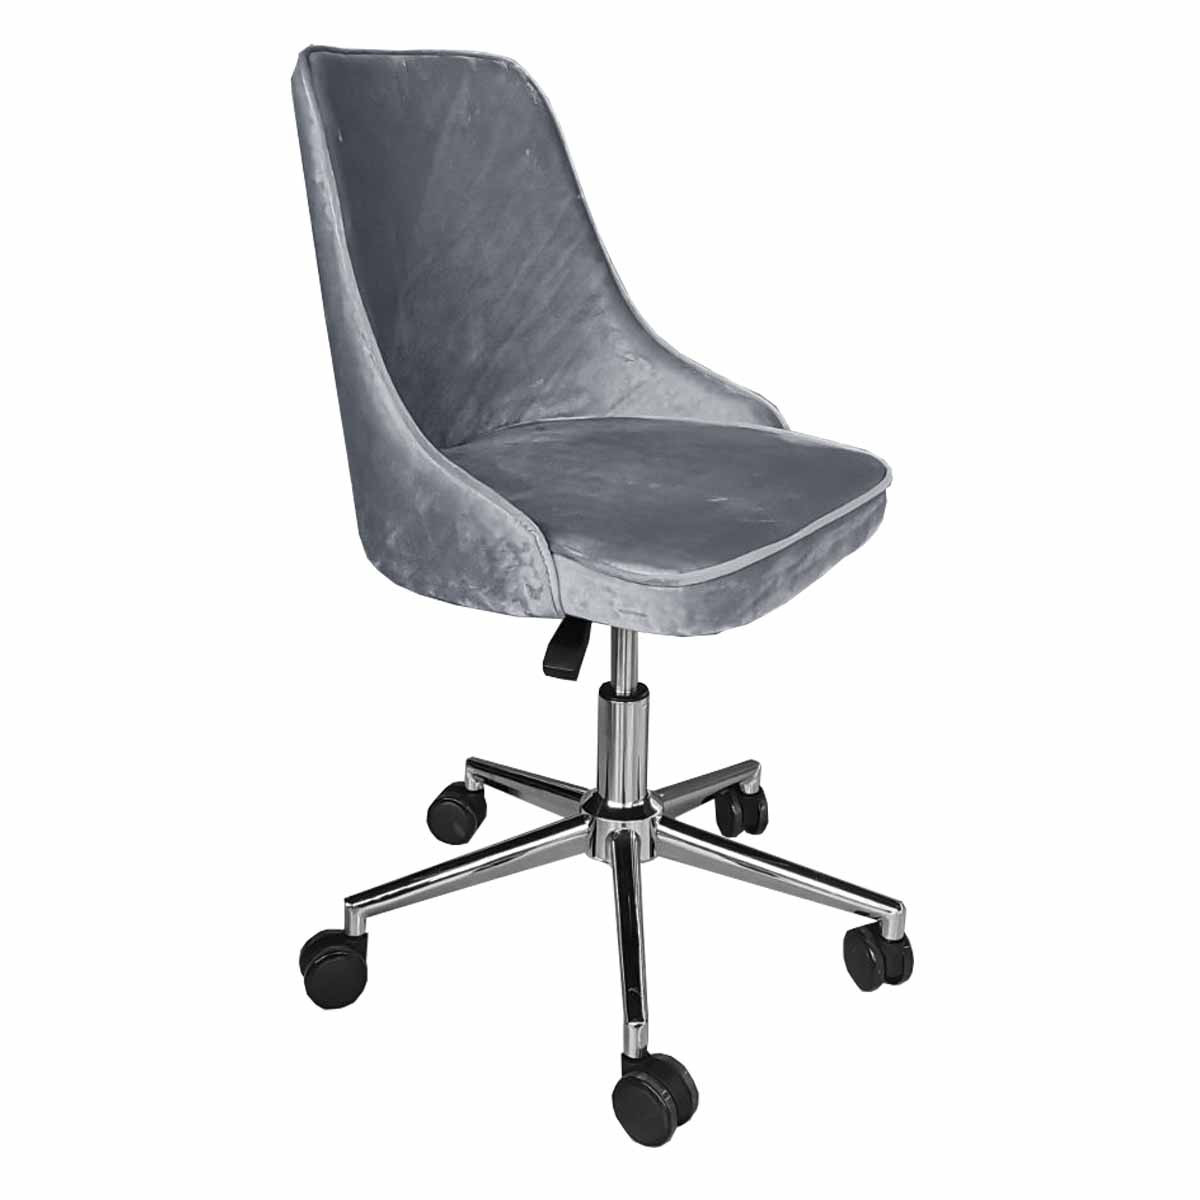 Офисное кресло Deco 9019 Grey